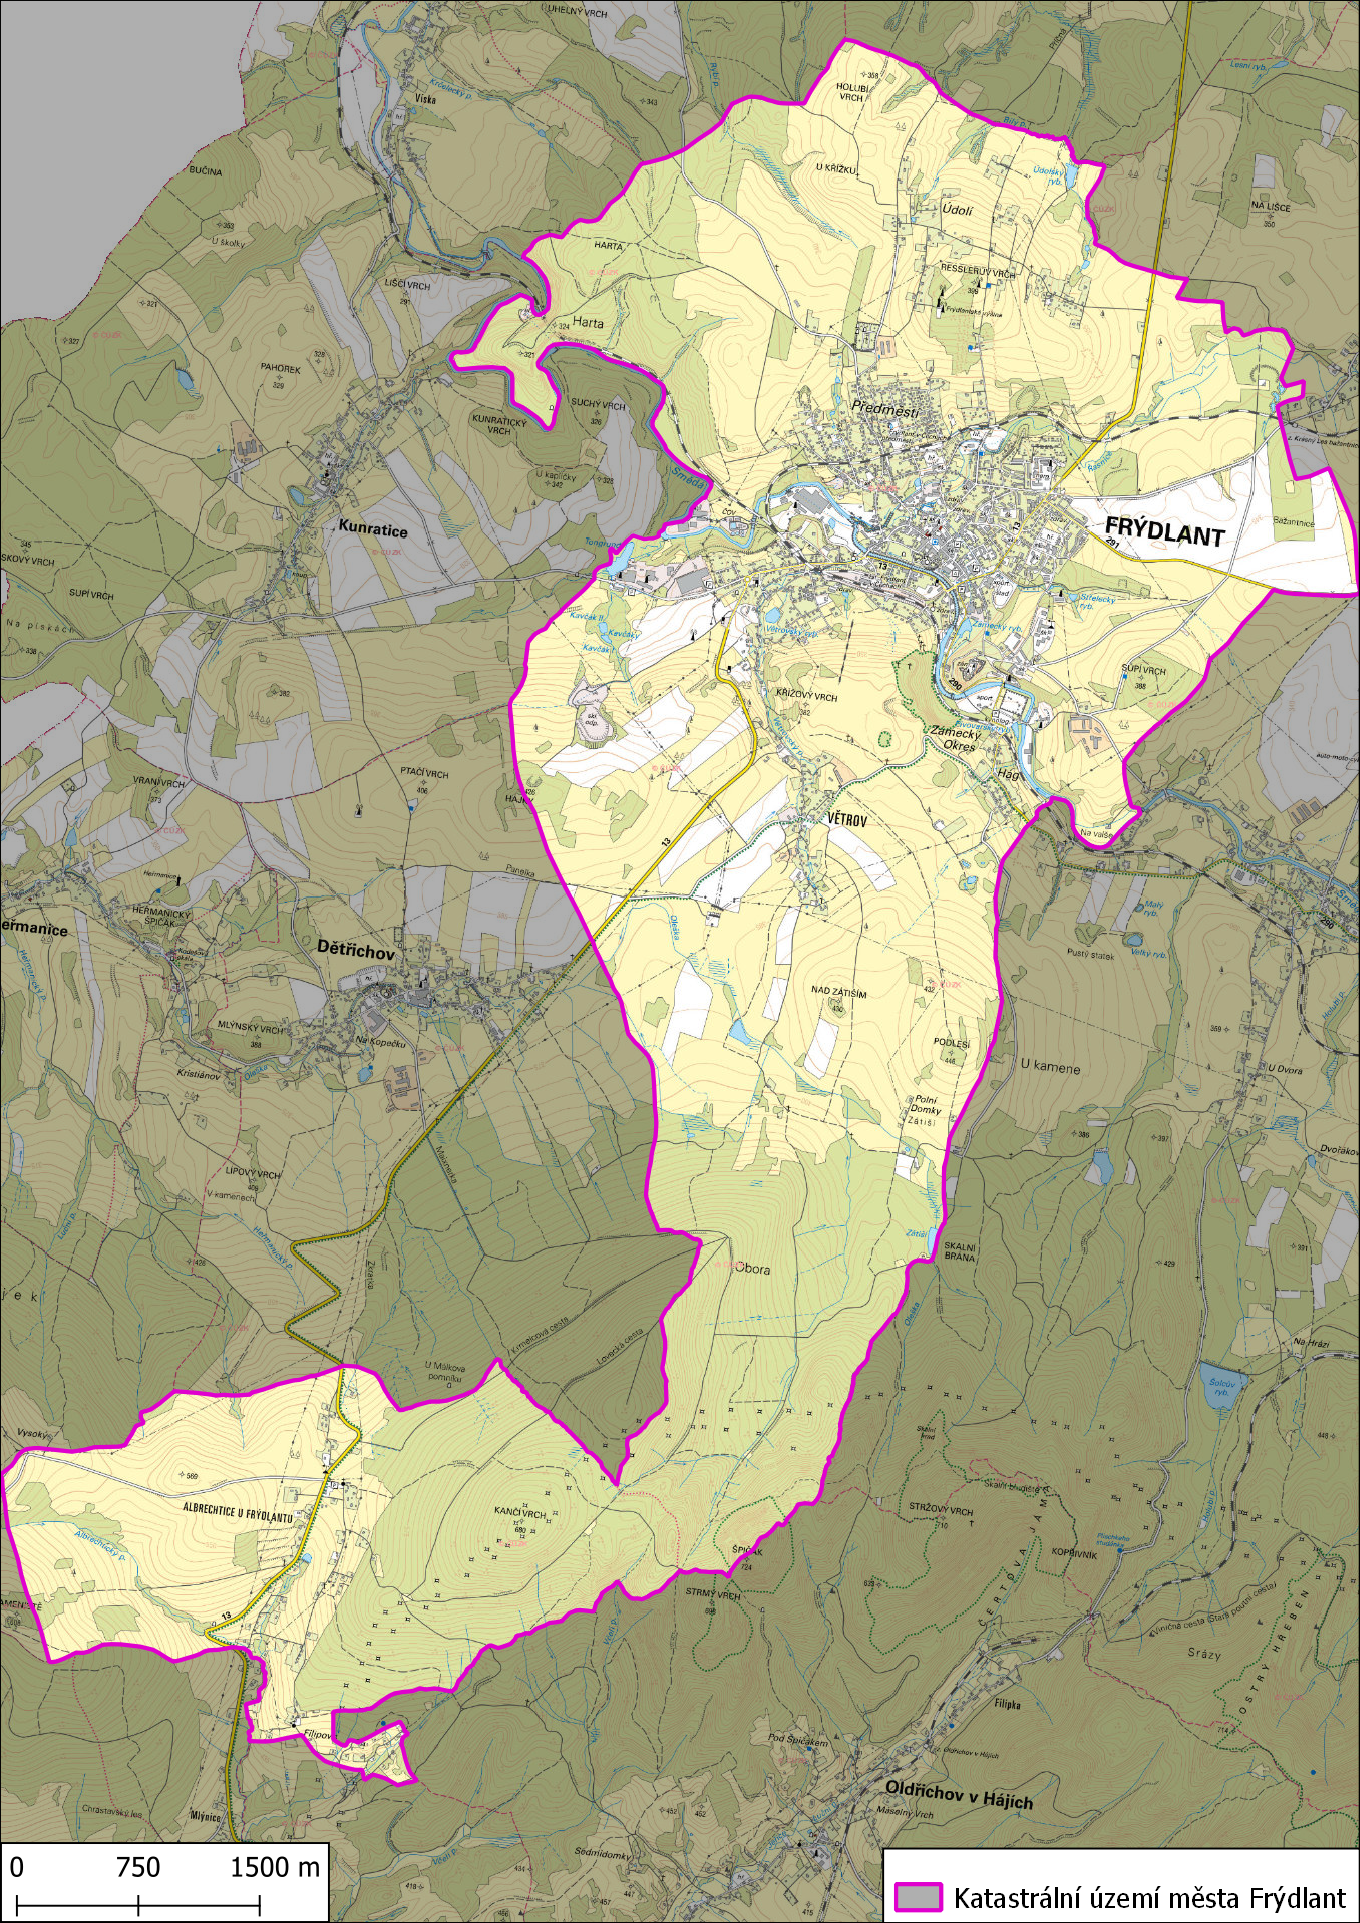 Katastrální území města Frýdlant